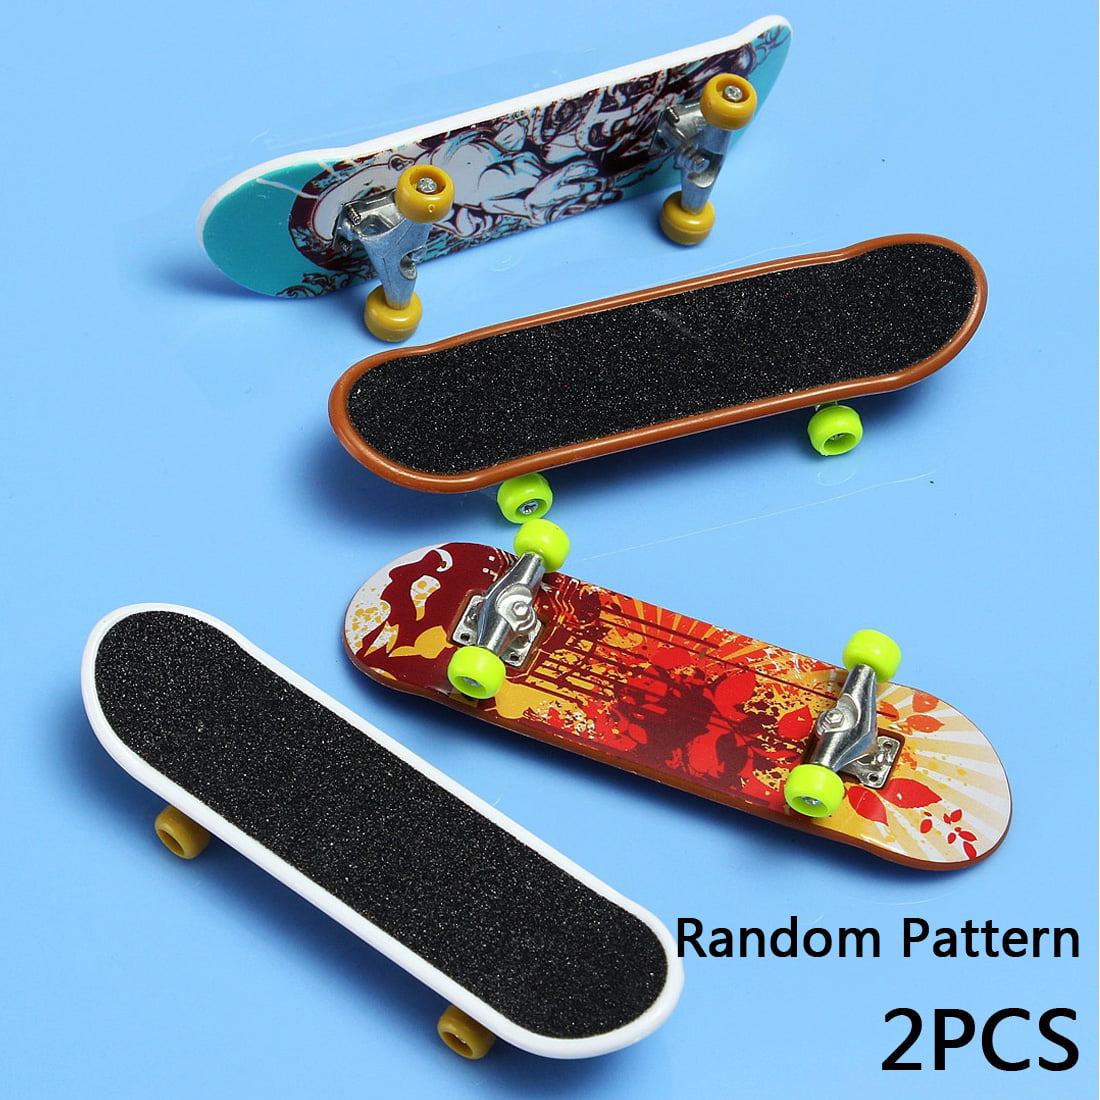 Random Popular 2pcs Finger Skateboard Kids Children Gift Toys FingerBoard Mini 